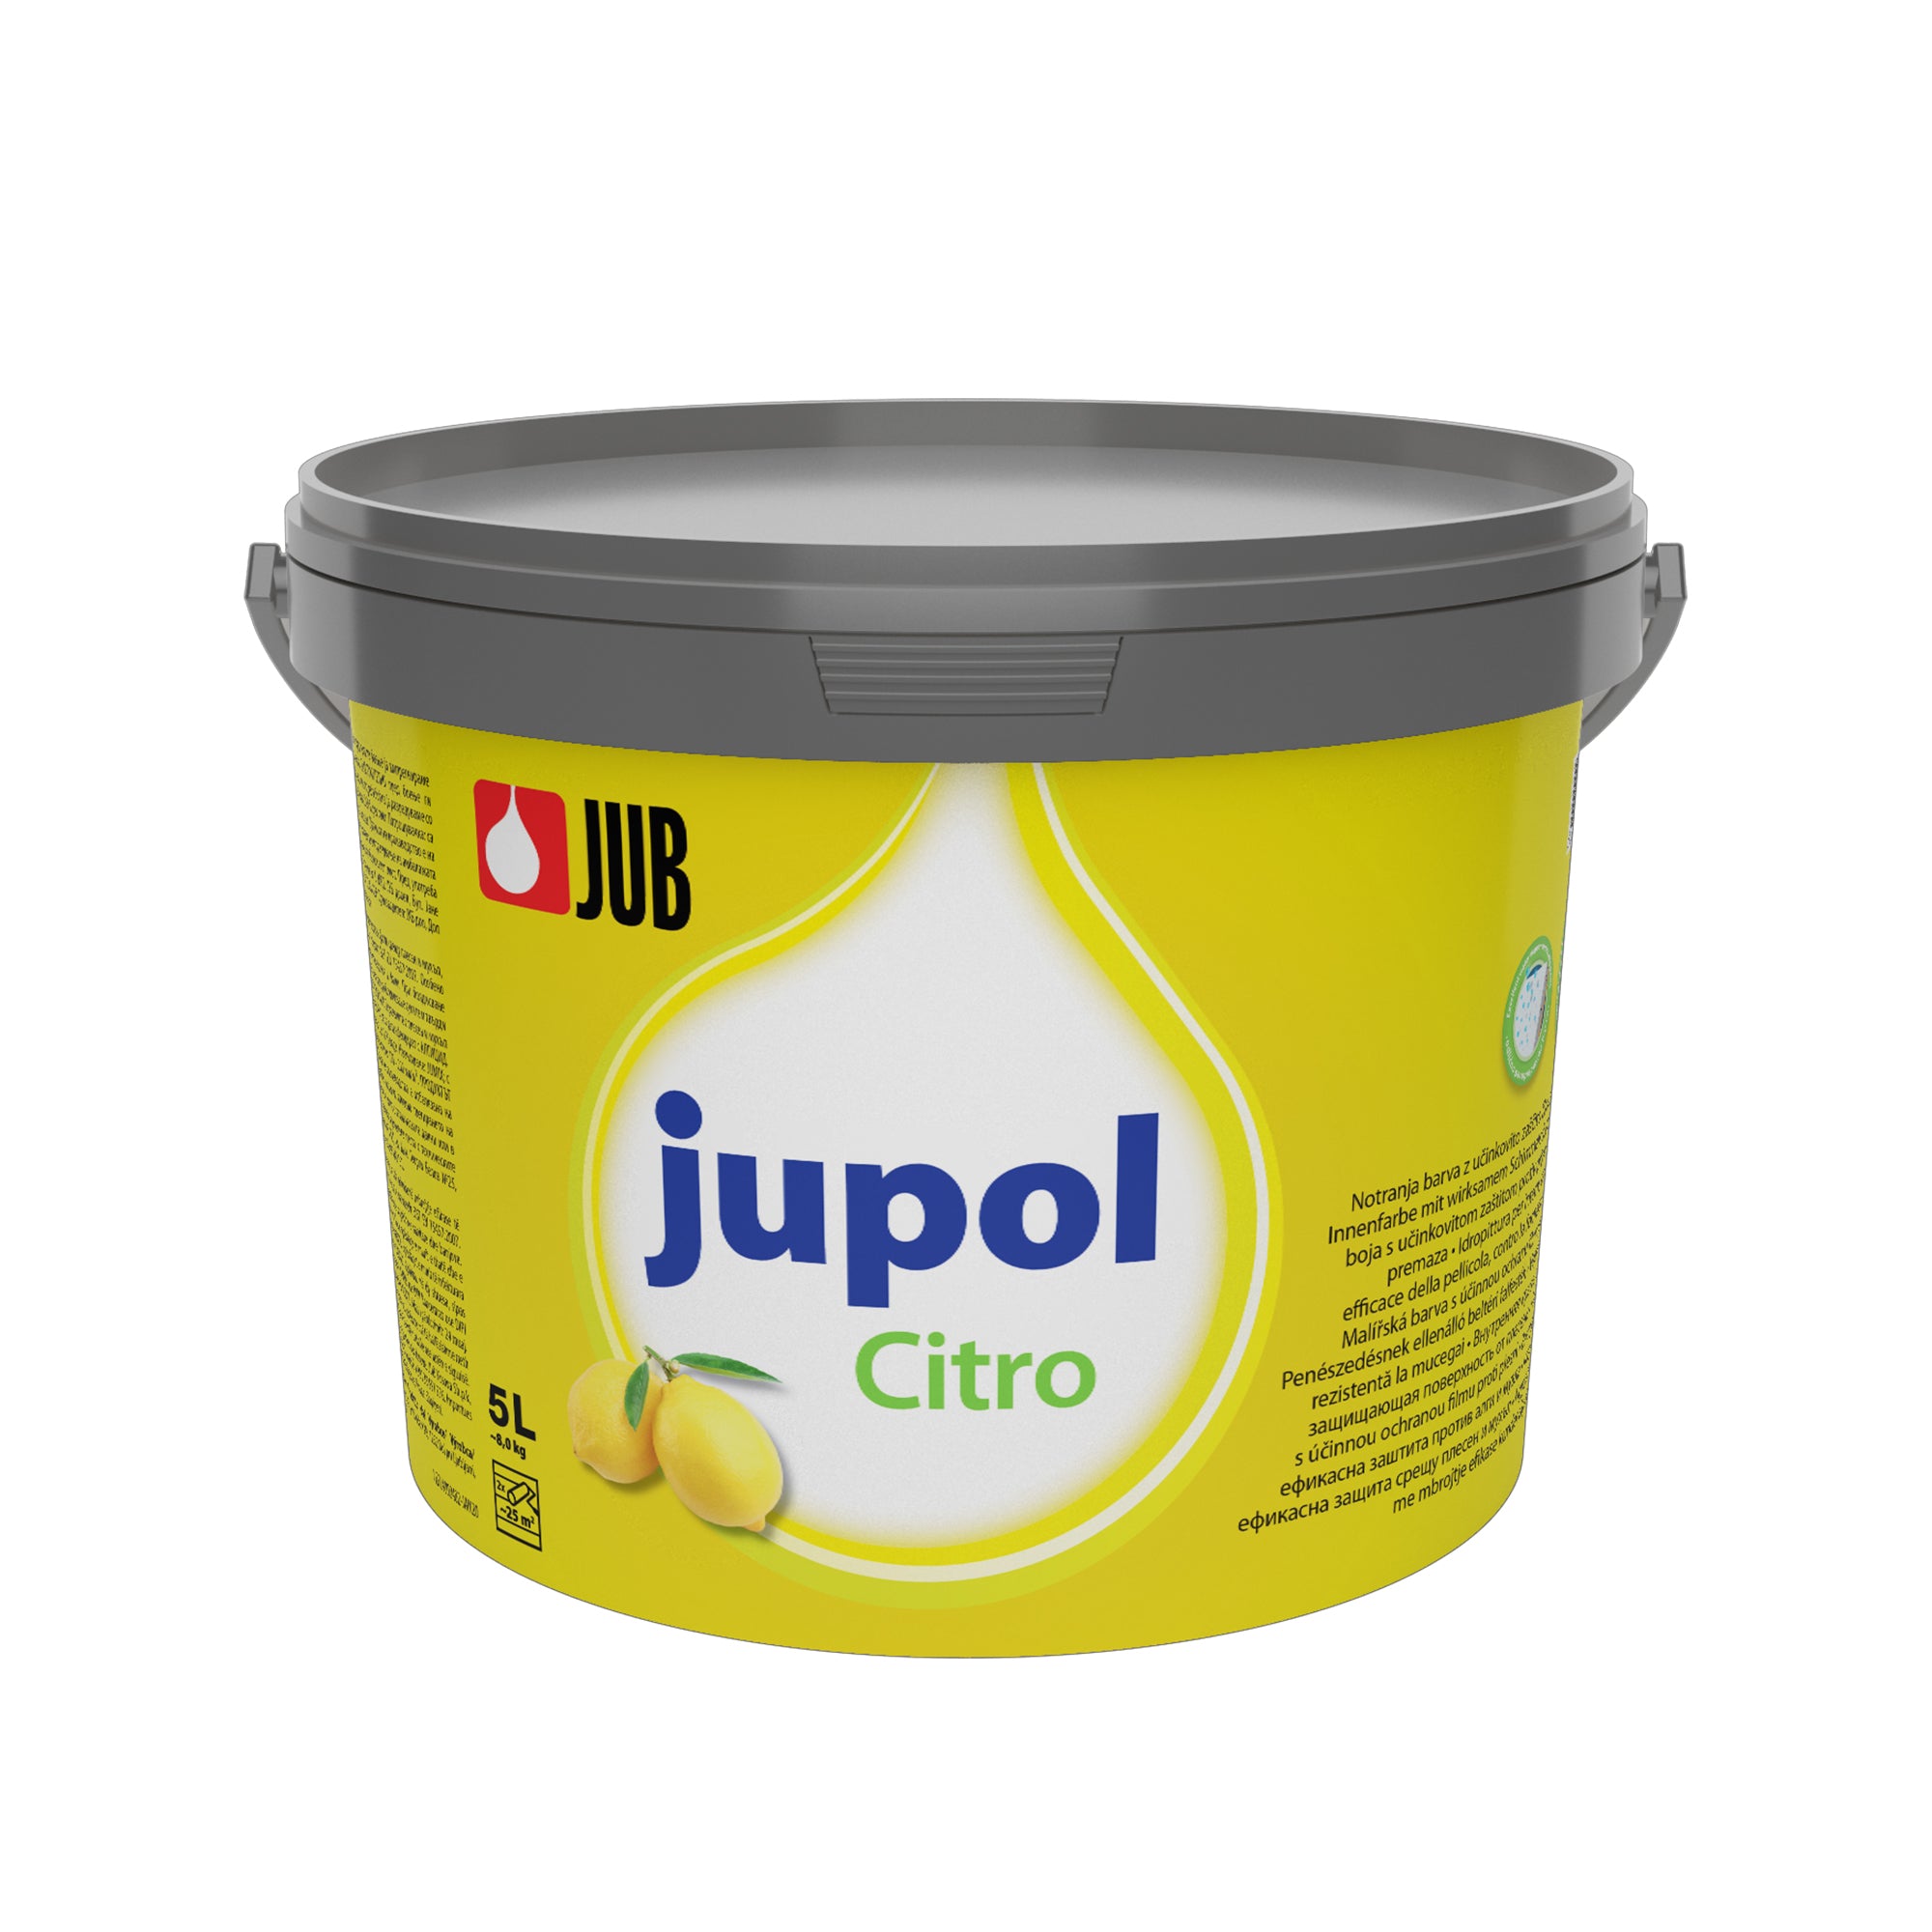 JUB JUPOL Citro vnitřní malířská barva proti plísním 5 l